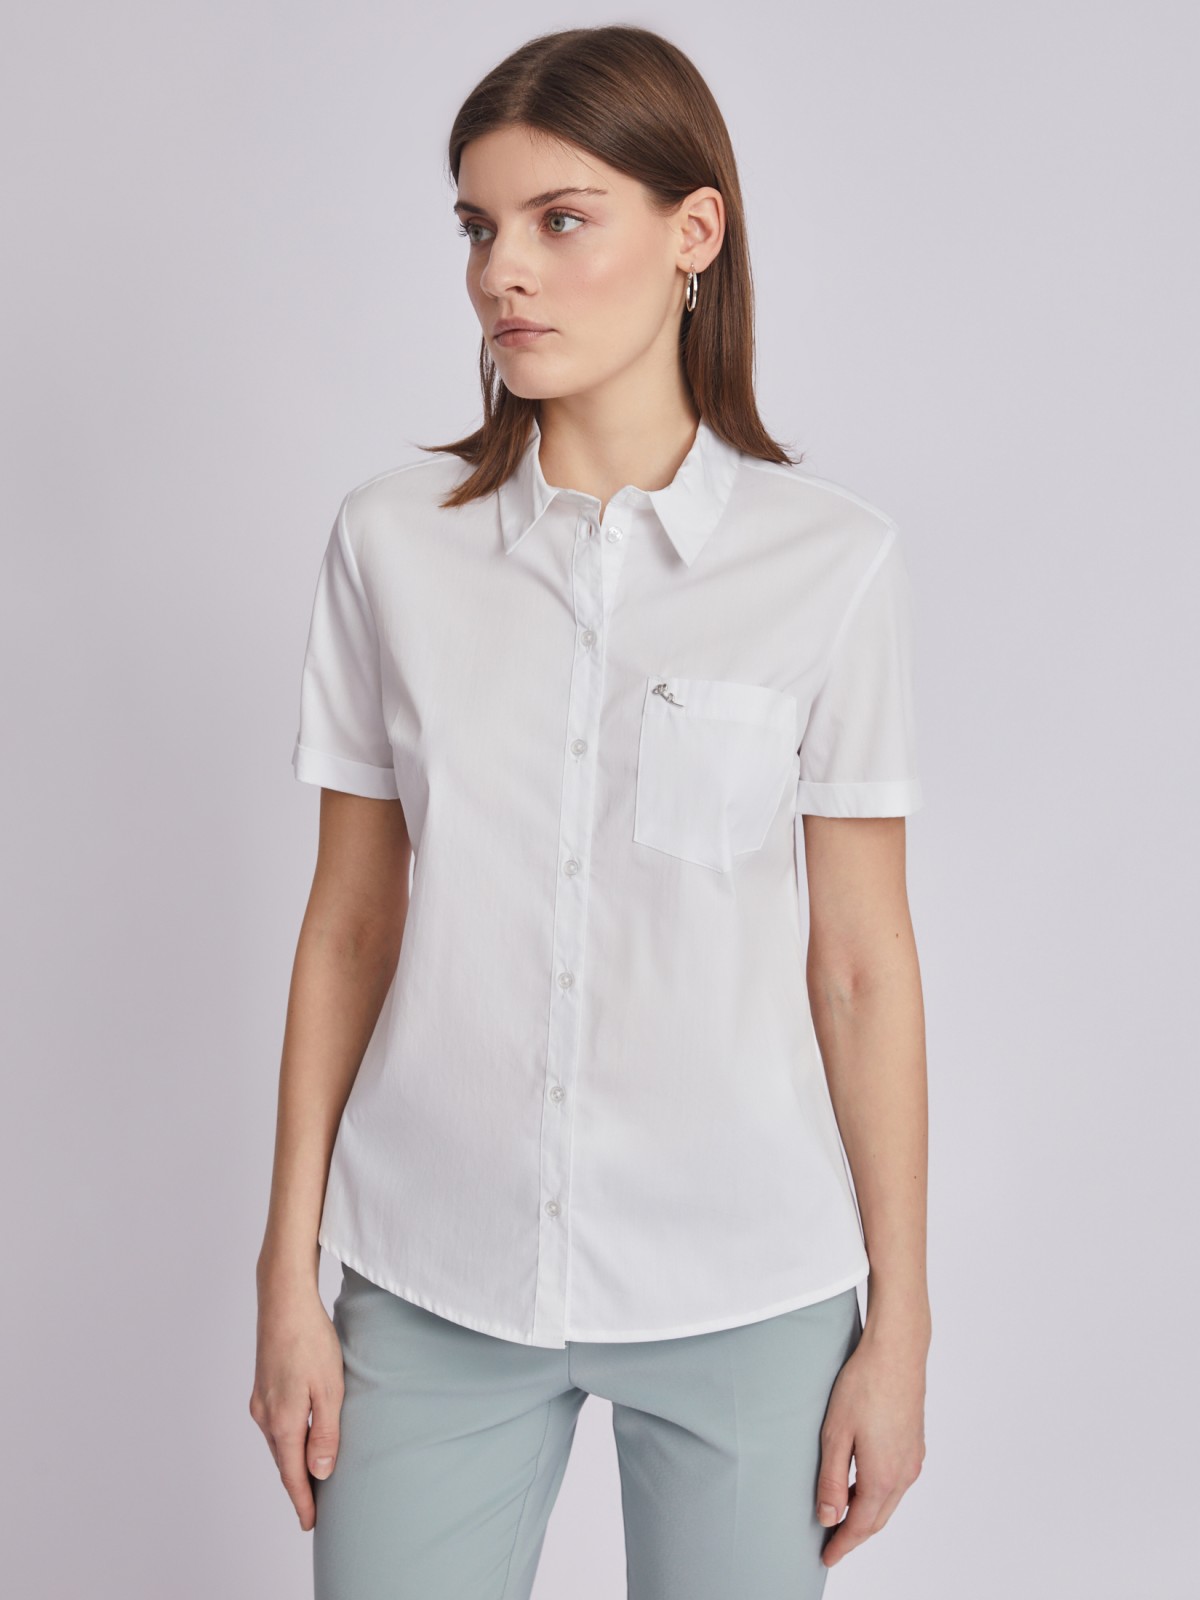 Рубашка с коротким рукавом zolla 223211259072, цвет белый, размер XS - фото 5